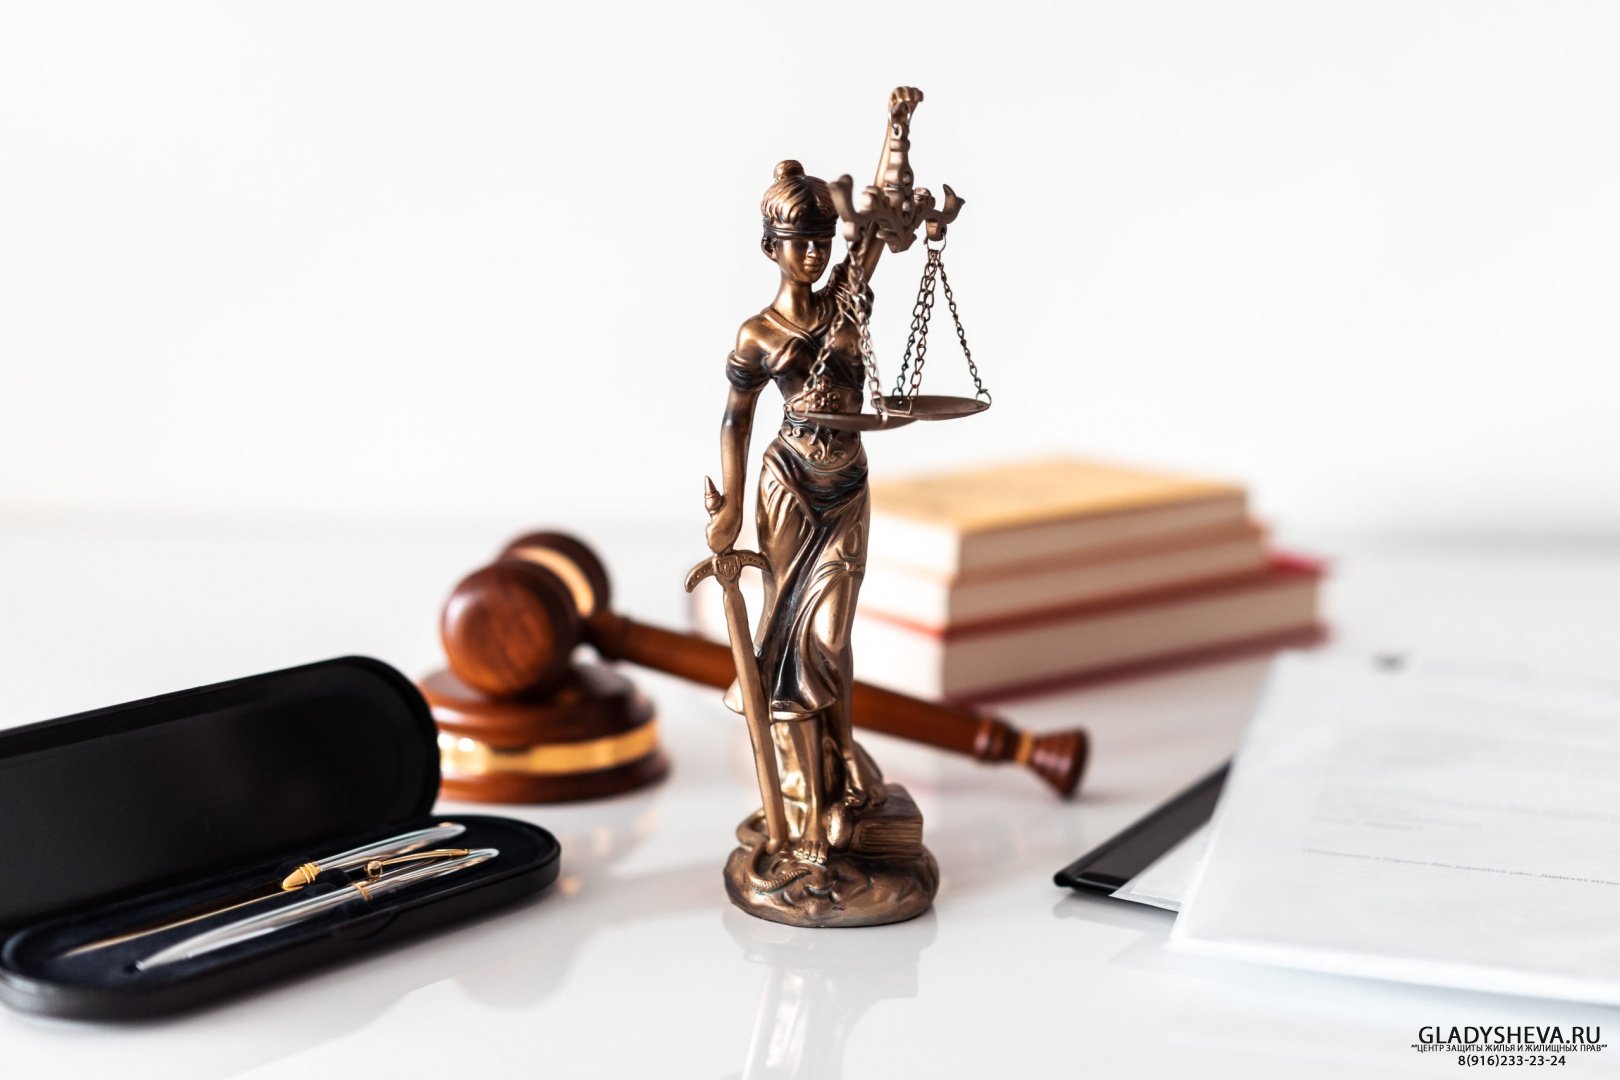 Правовая юридическая консультация, защита прав